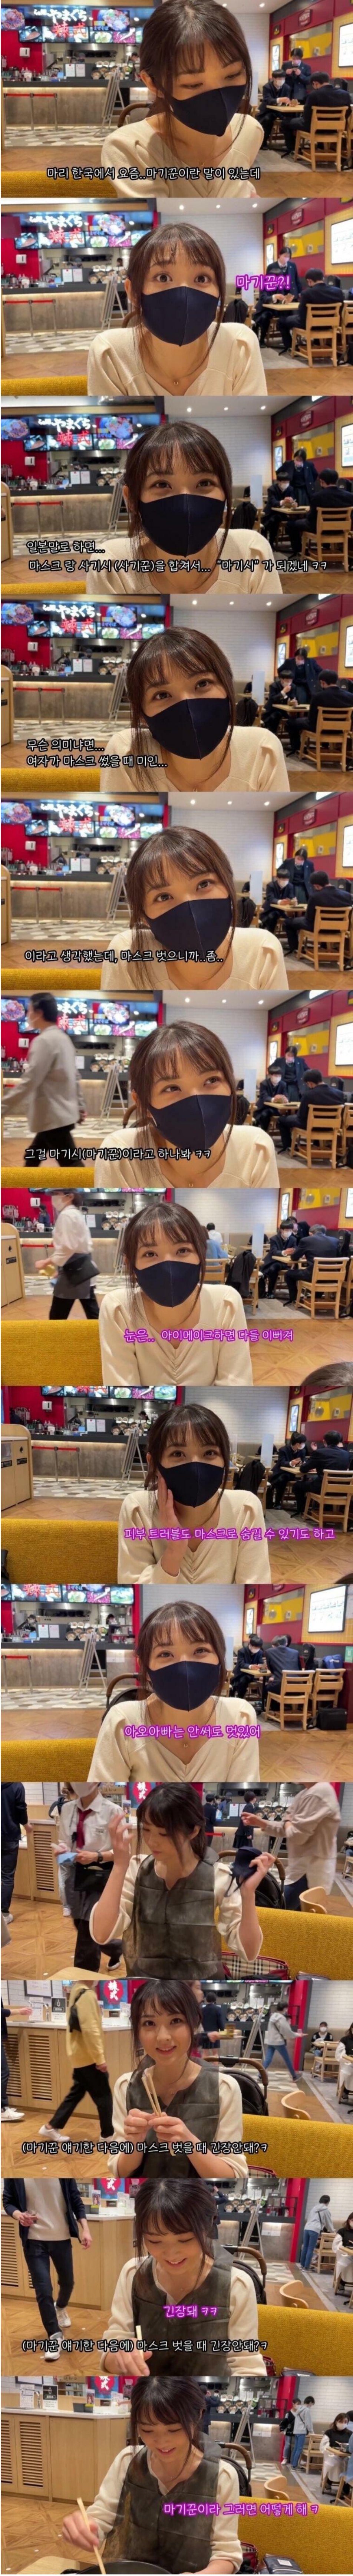 썸네일-마스크 벗을때 사기꾼 소리들을까봐 긴장된다는 일본인 아내....jpg-이미지